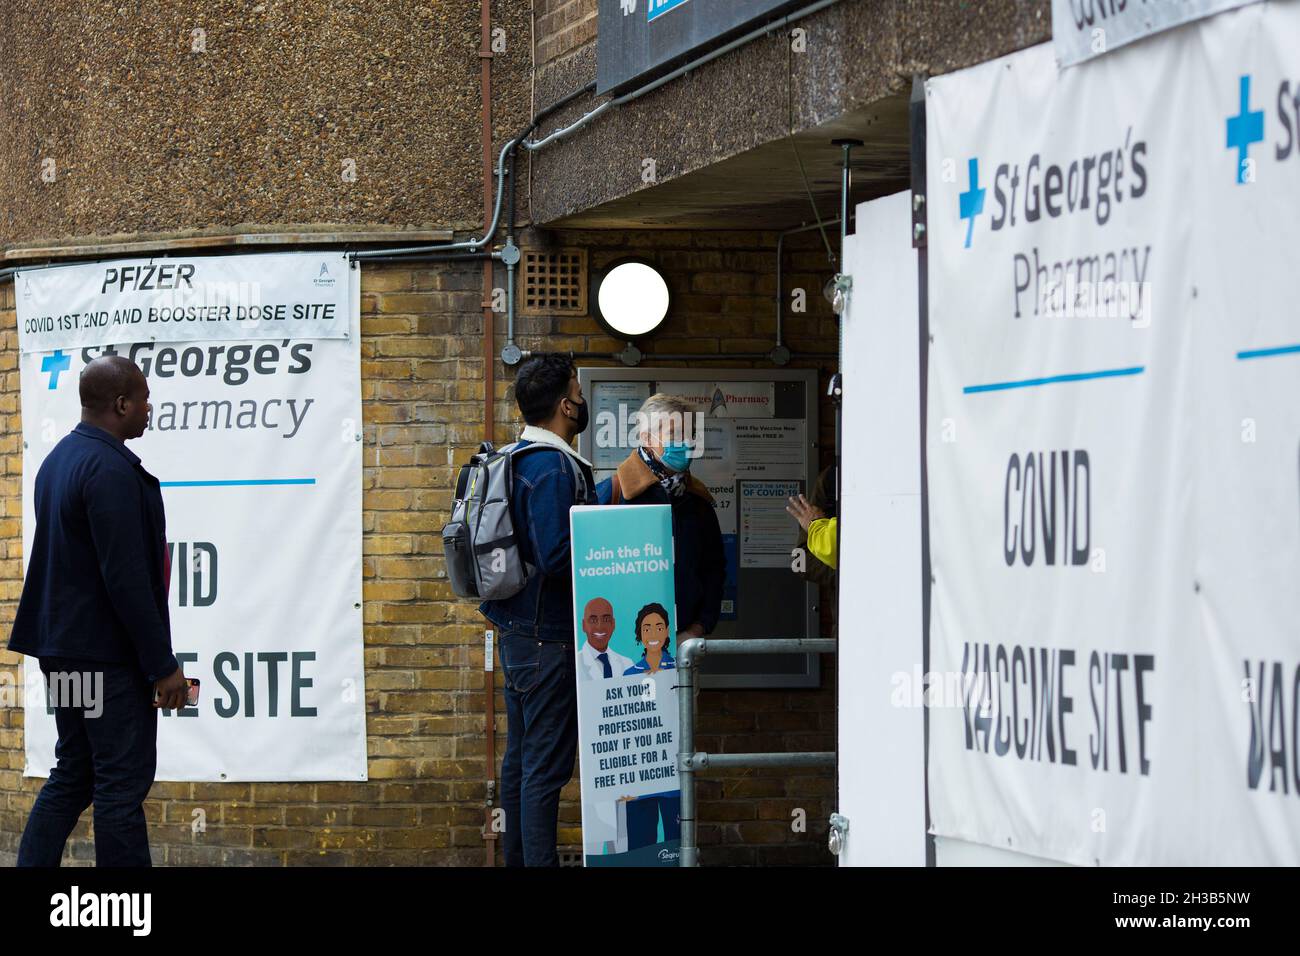 Las banderas de un sitio de vacuna de Covid se ven expuestas fuera de una farmacia cuando la gente llega a Londres, el 23 de octubre de 2021. Foto de stock